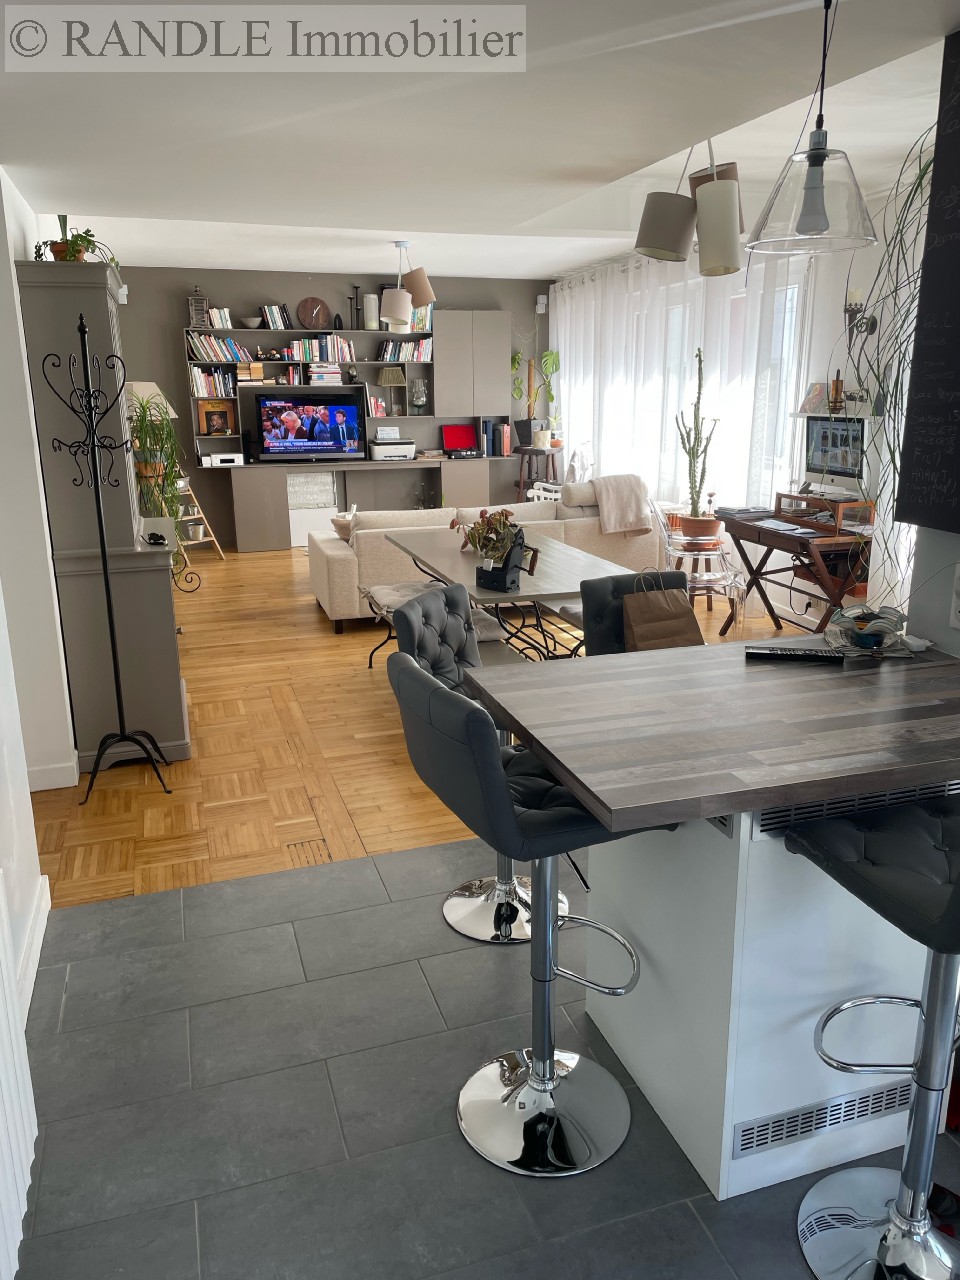 Vente appartement - LORIENT 81 m², 3 pièces